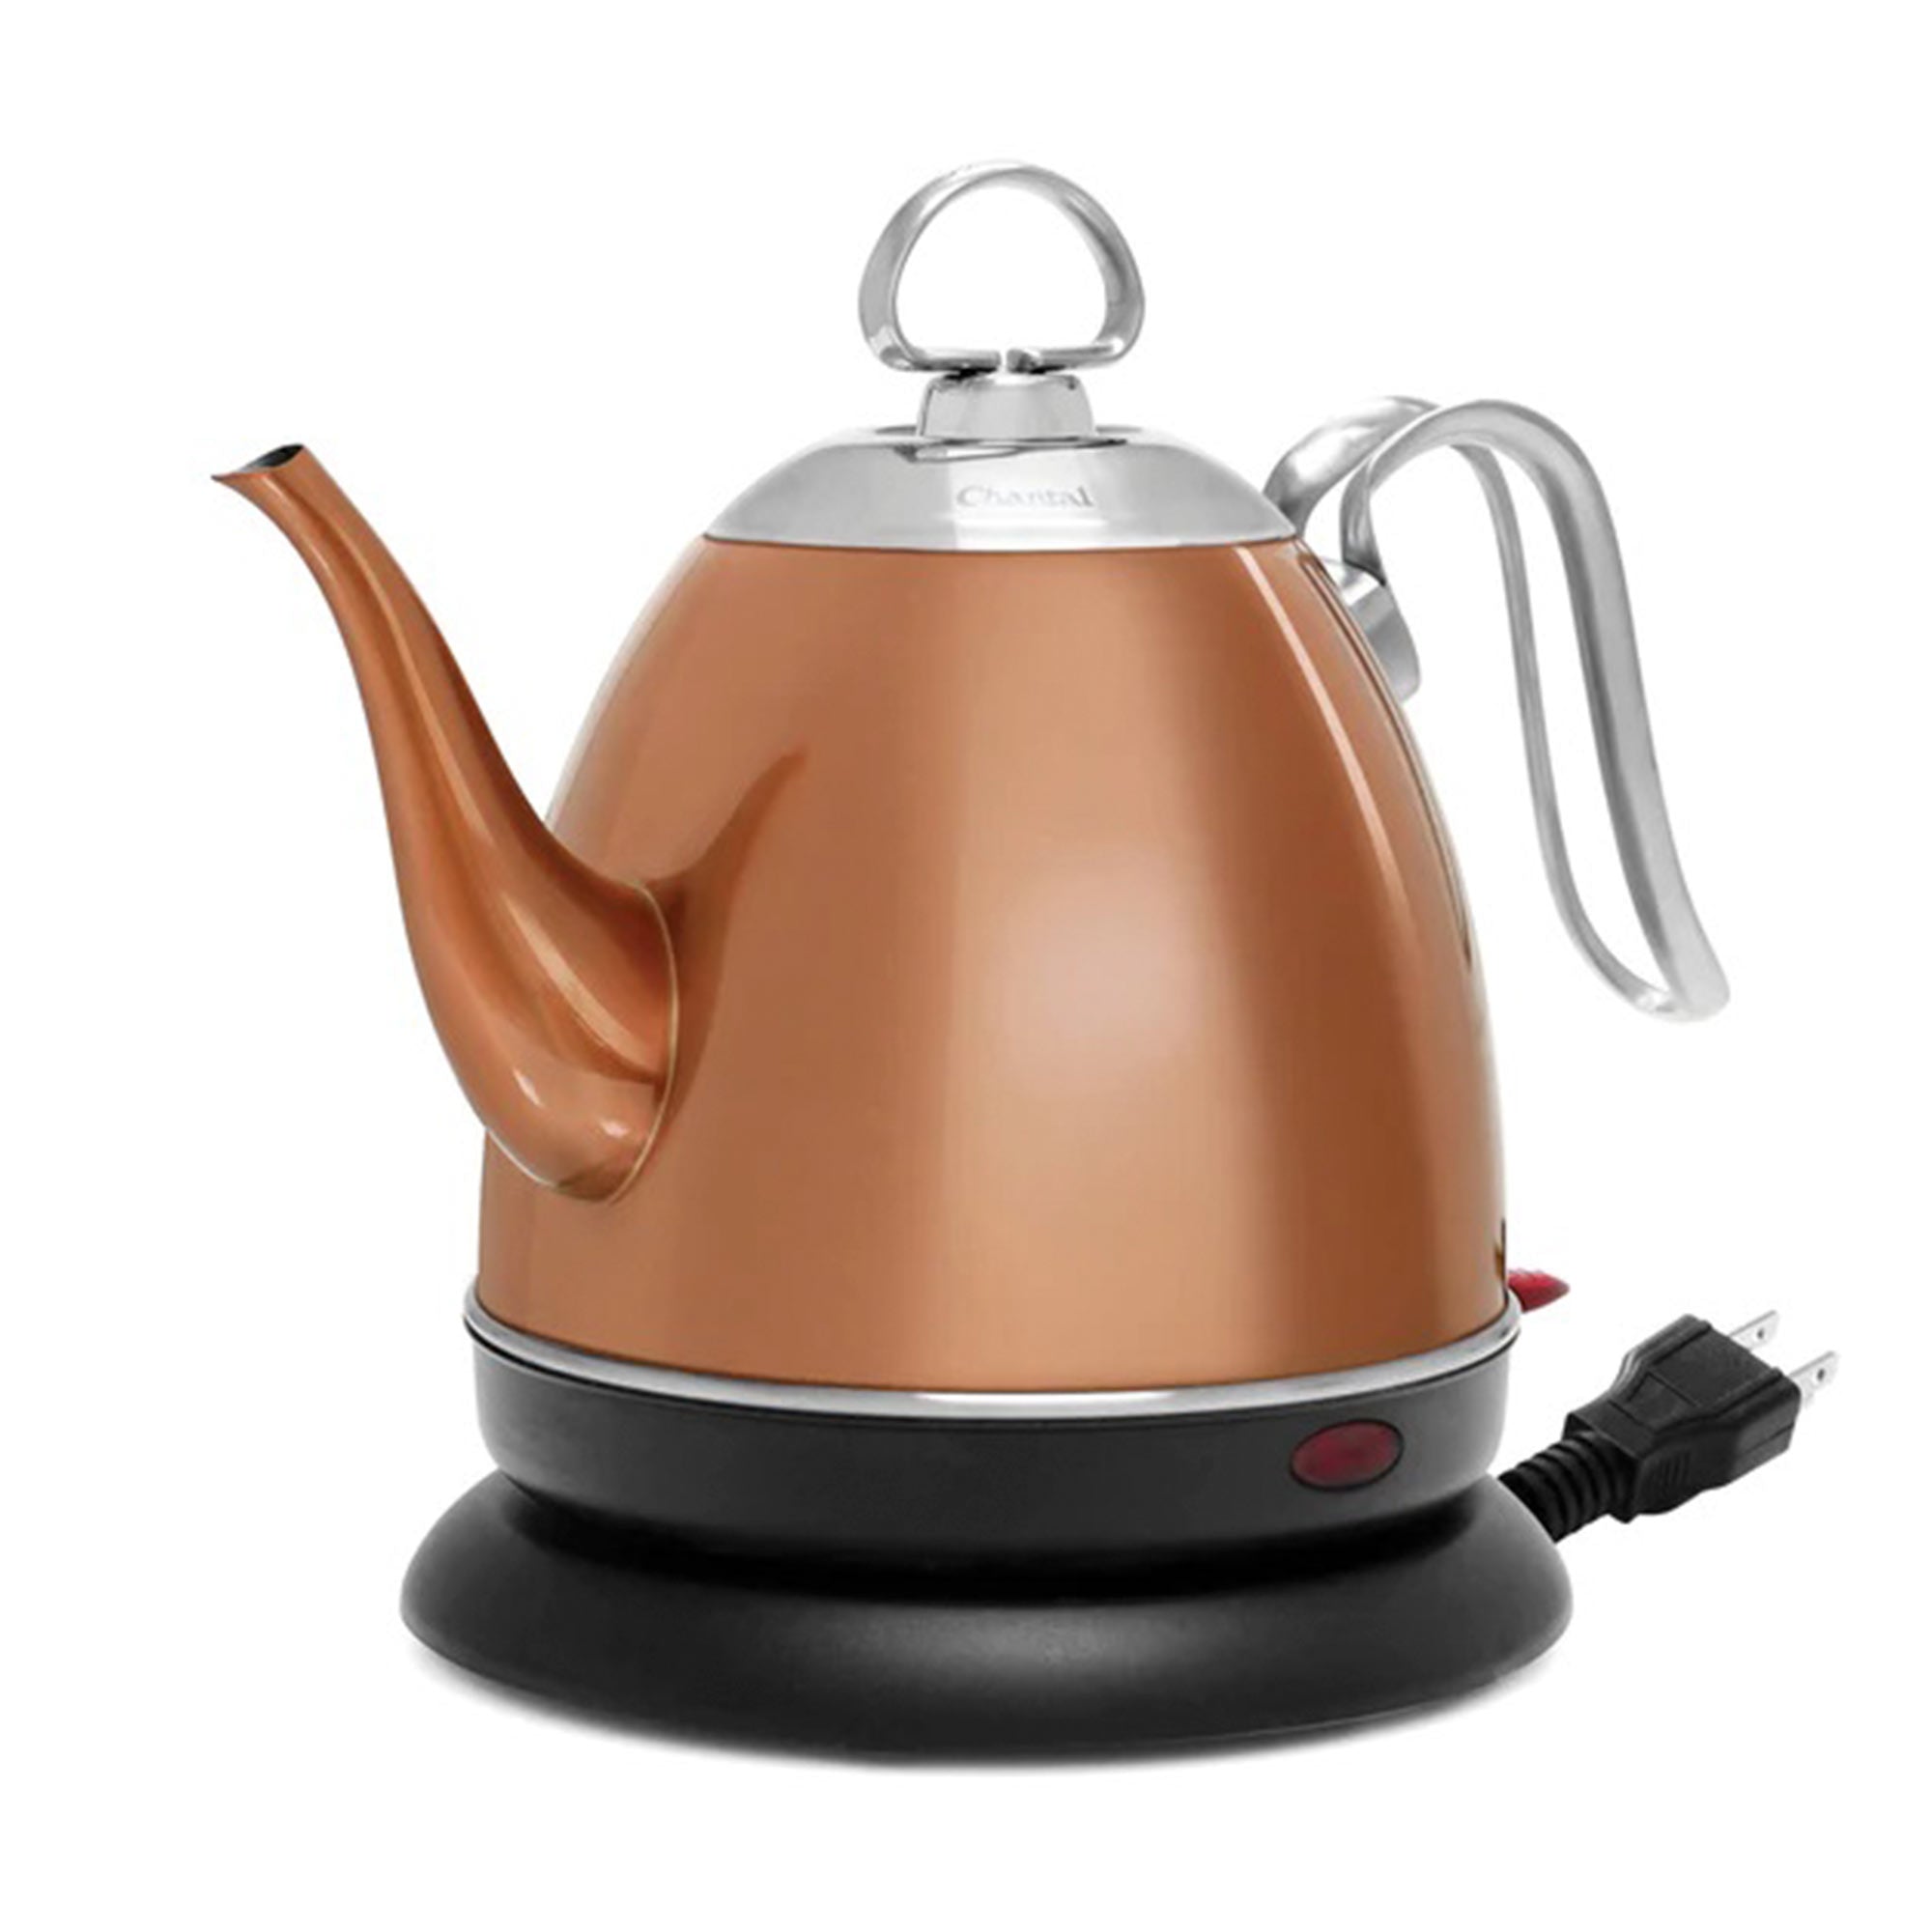 Чайник электрический купить недорого в интернет магазине. Чайник Chantal Copper kettle. Чайник Irit ir-1352, красный. Electric kettle чайник Raf. AOLINGE чайник электрический.